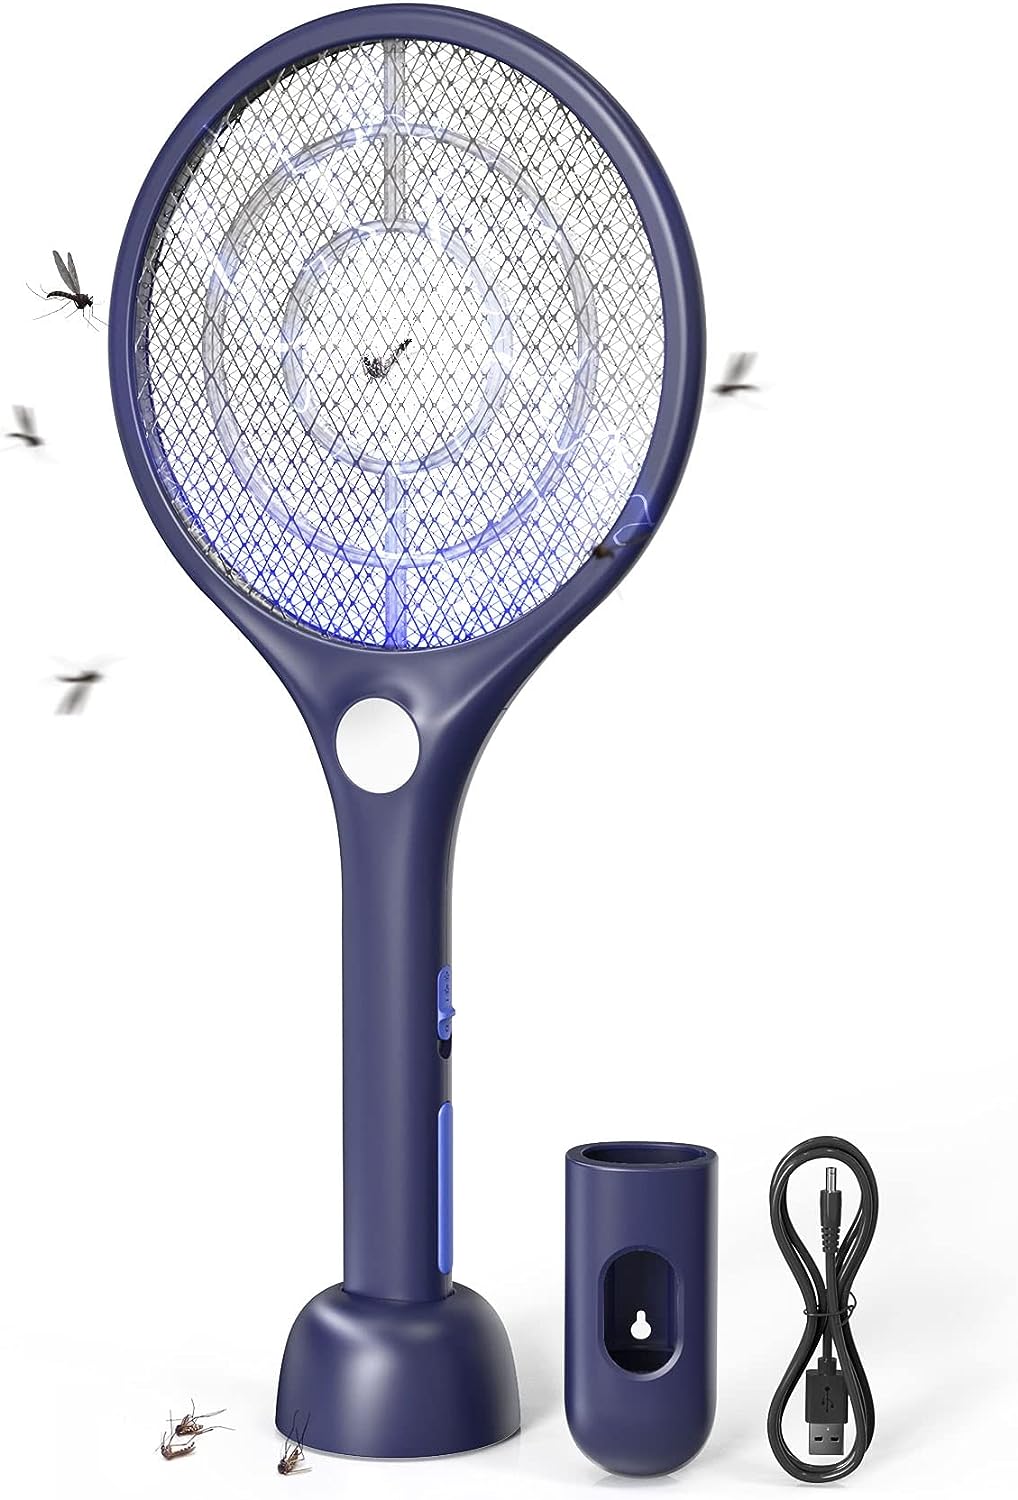 CONOPU Elektrische Fliegenklatsche, 4000V Fliegenklatsche Elektrisch, USB -Ladebasis, Wiederaufladbar Insektenvernichter, LED, Doppelte Schichten Schutz, Wirksam Gegen Stechmücken, Blau